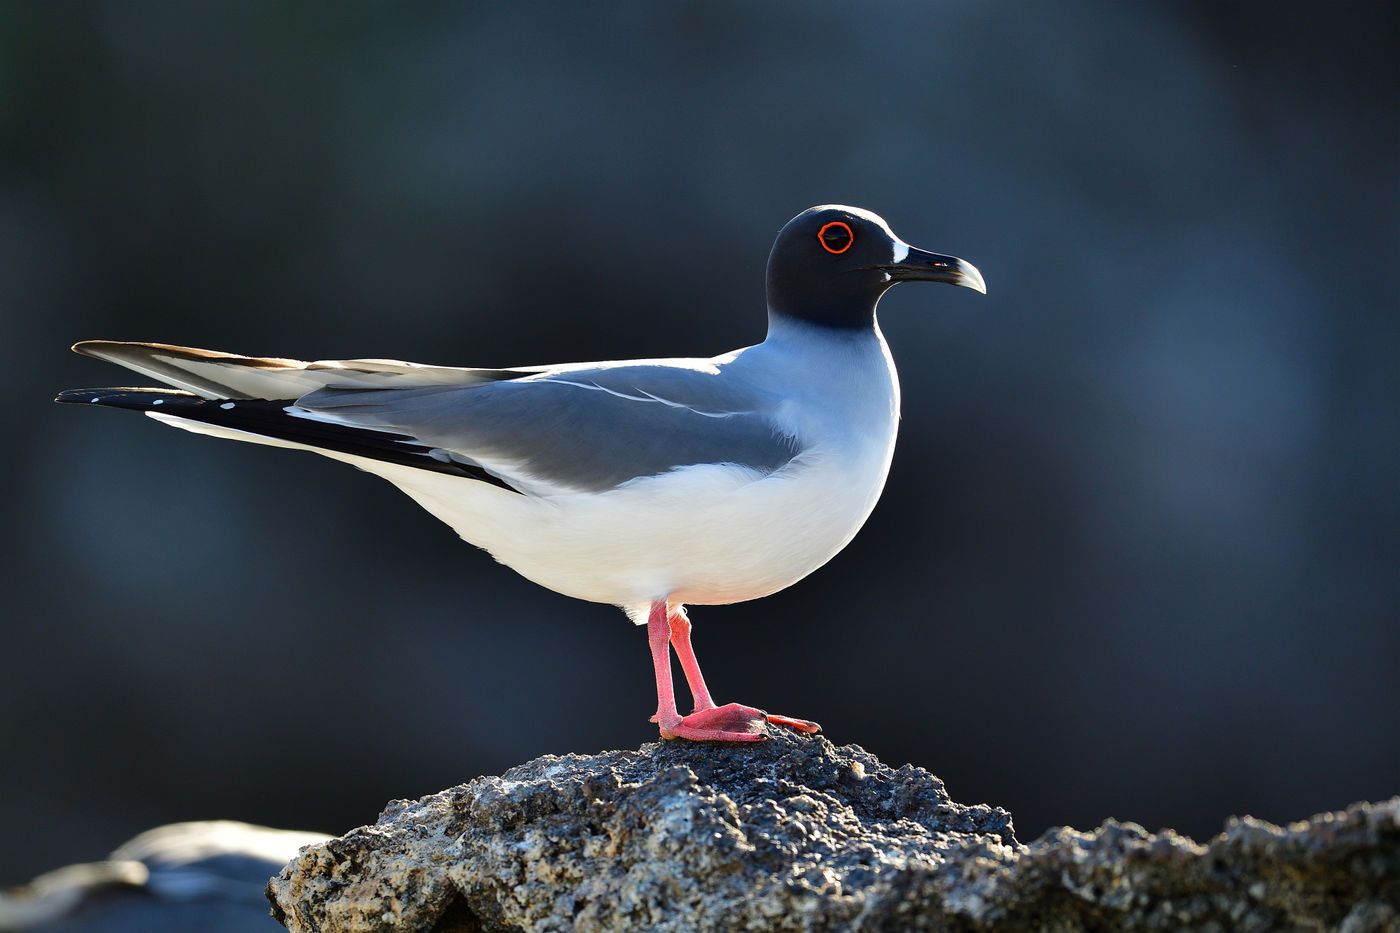 Met hun grote ogen jagen swallow-tailed gulls wanneer het donker is op inktvis, vrij uniek onder de meeuwen! © Yves Adams